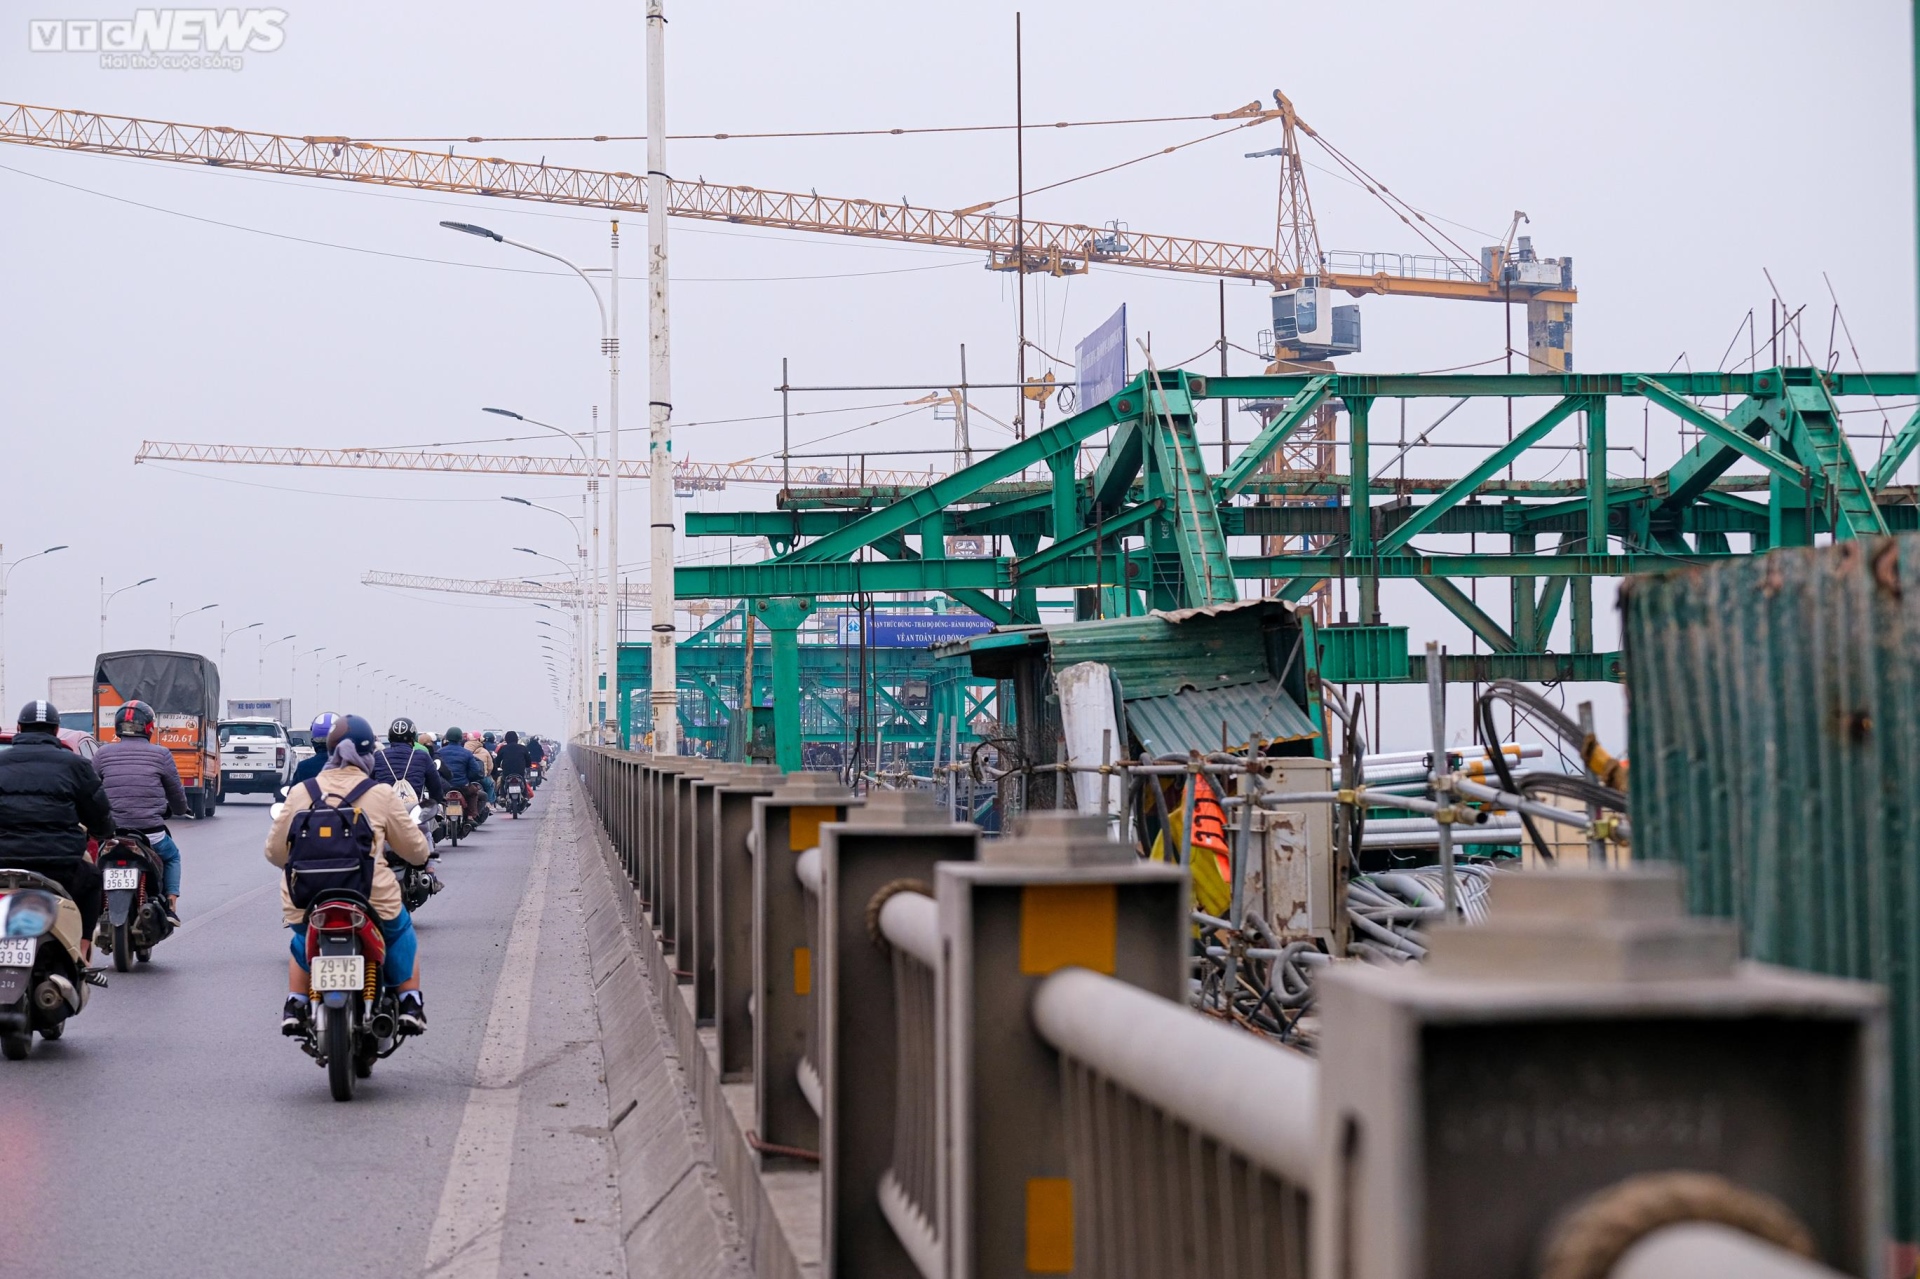 Toàn cảnh dự án cầu Vĩnh Tuy sắp hoàn thành nhìn từ trên cao - Ảnh 14.